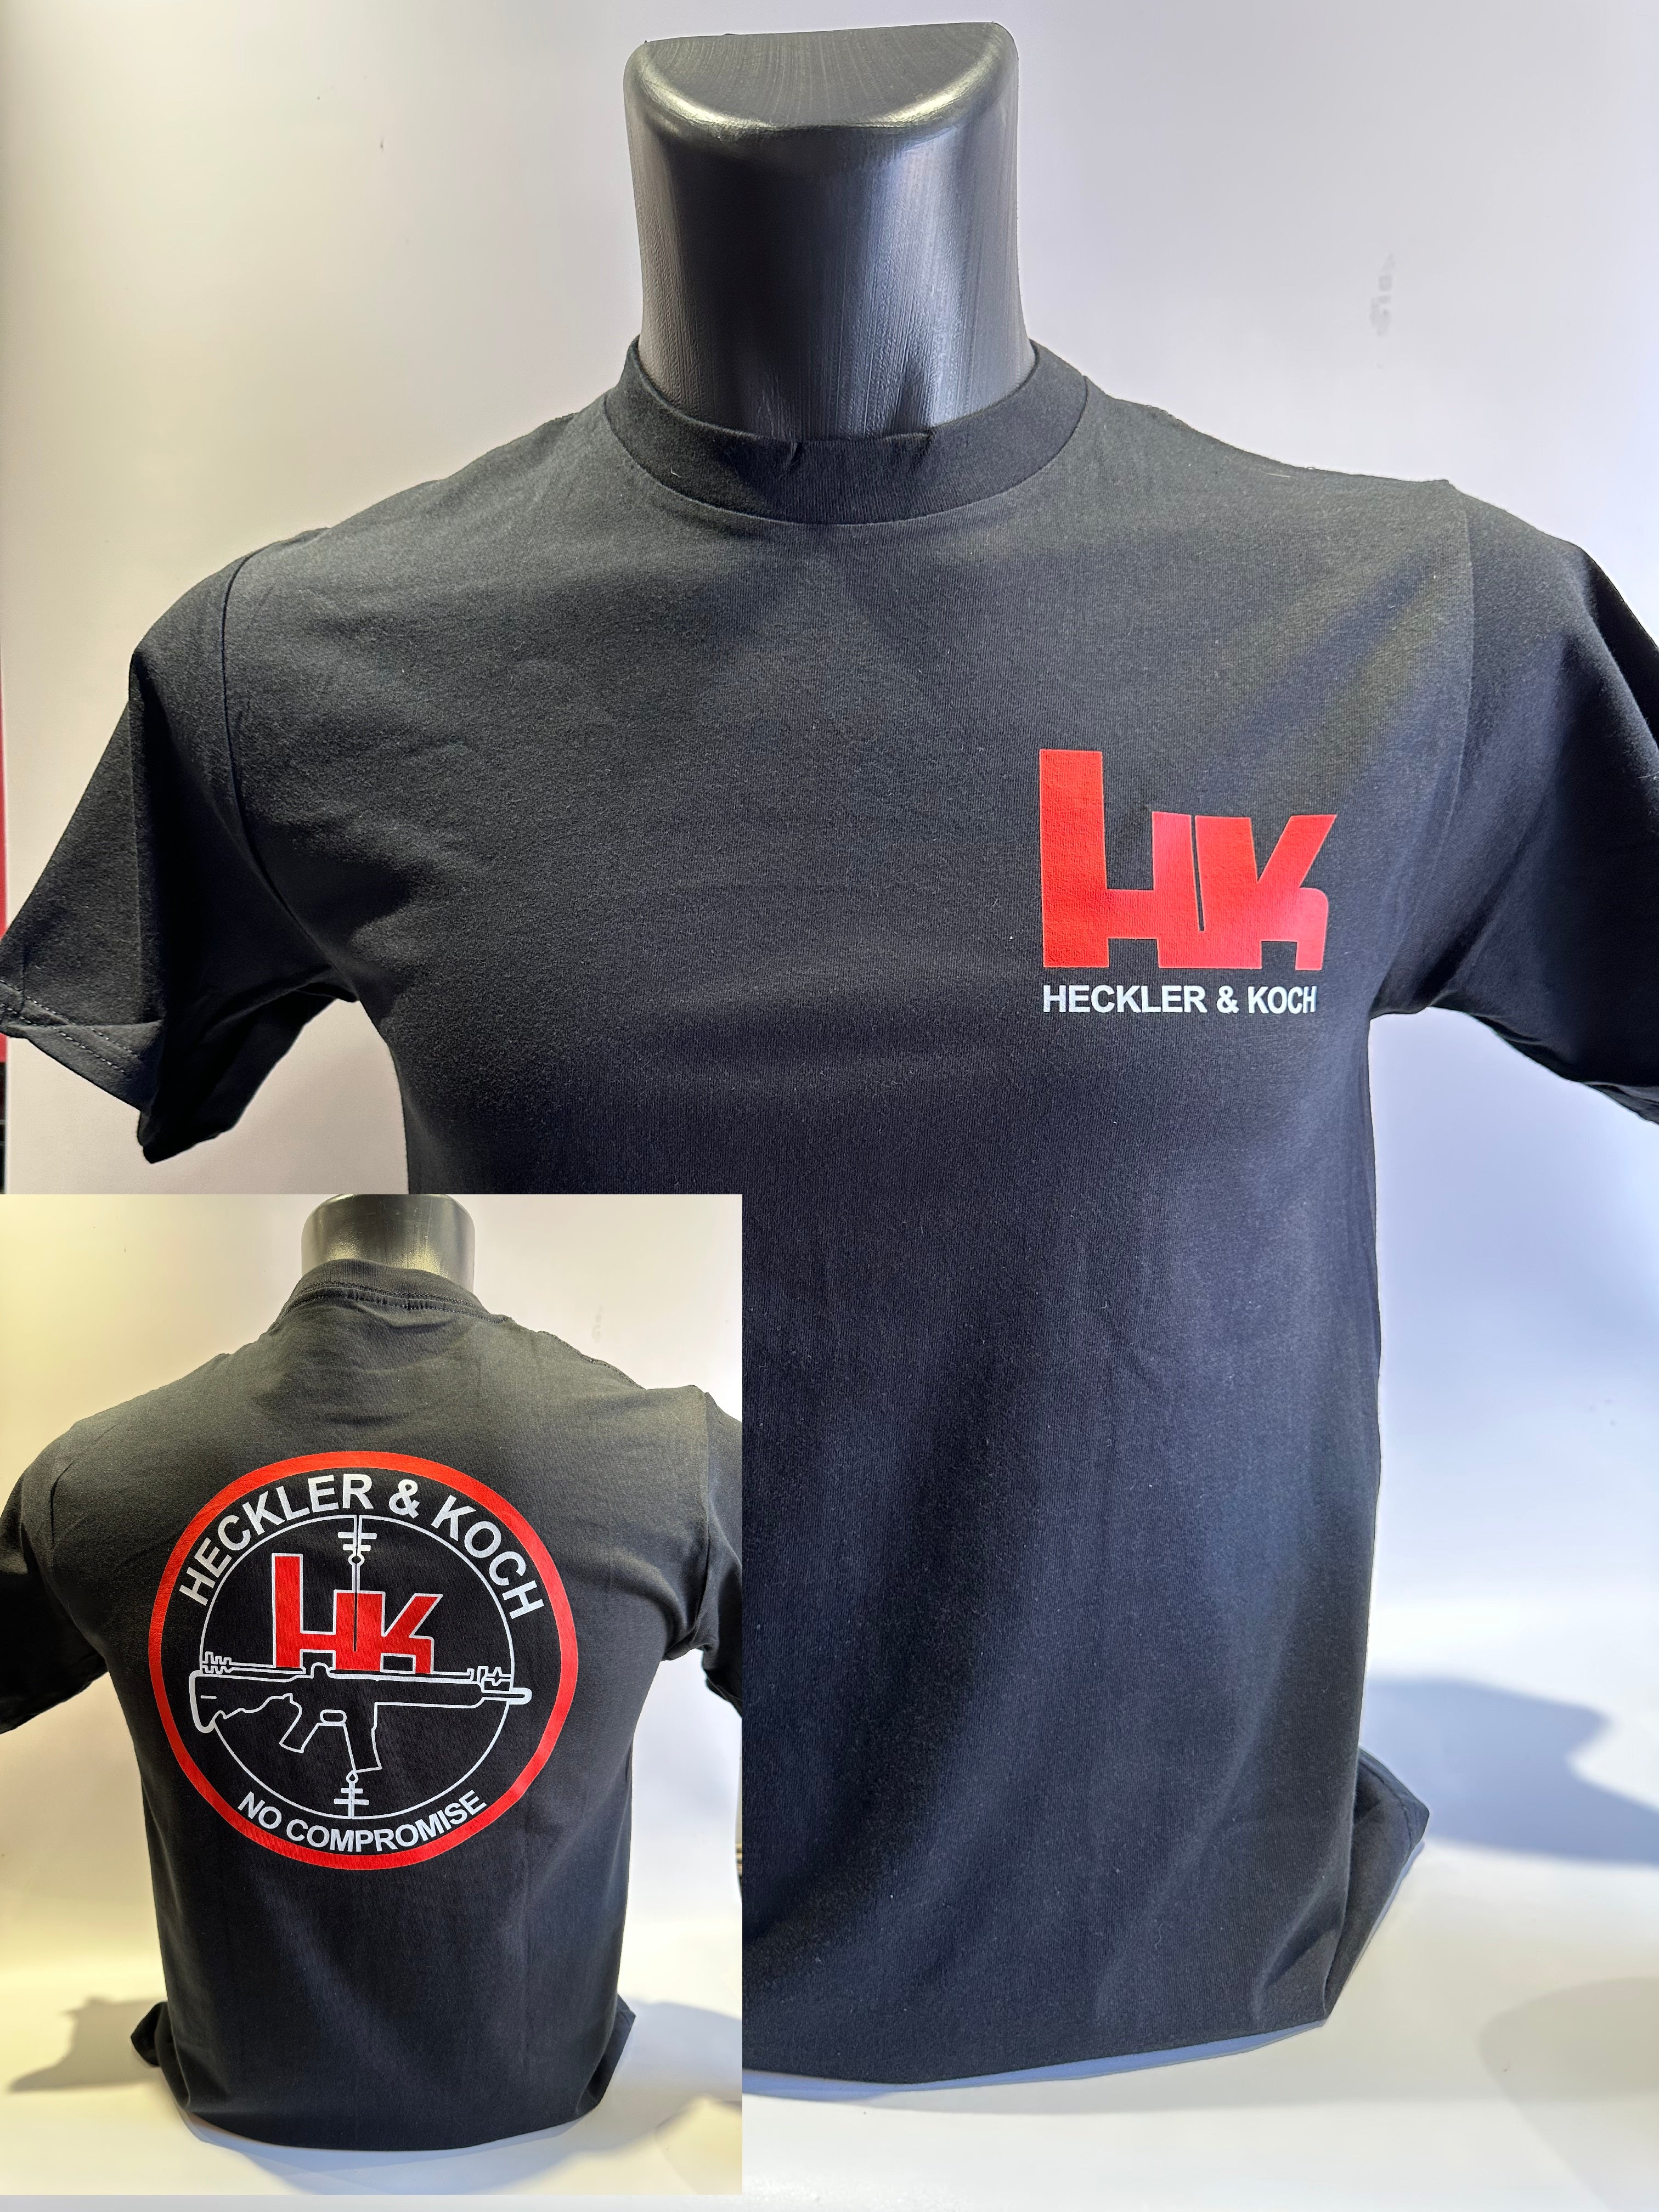 Heckler & Koch T shirt – HIG OPERATOR